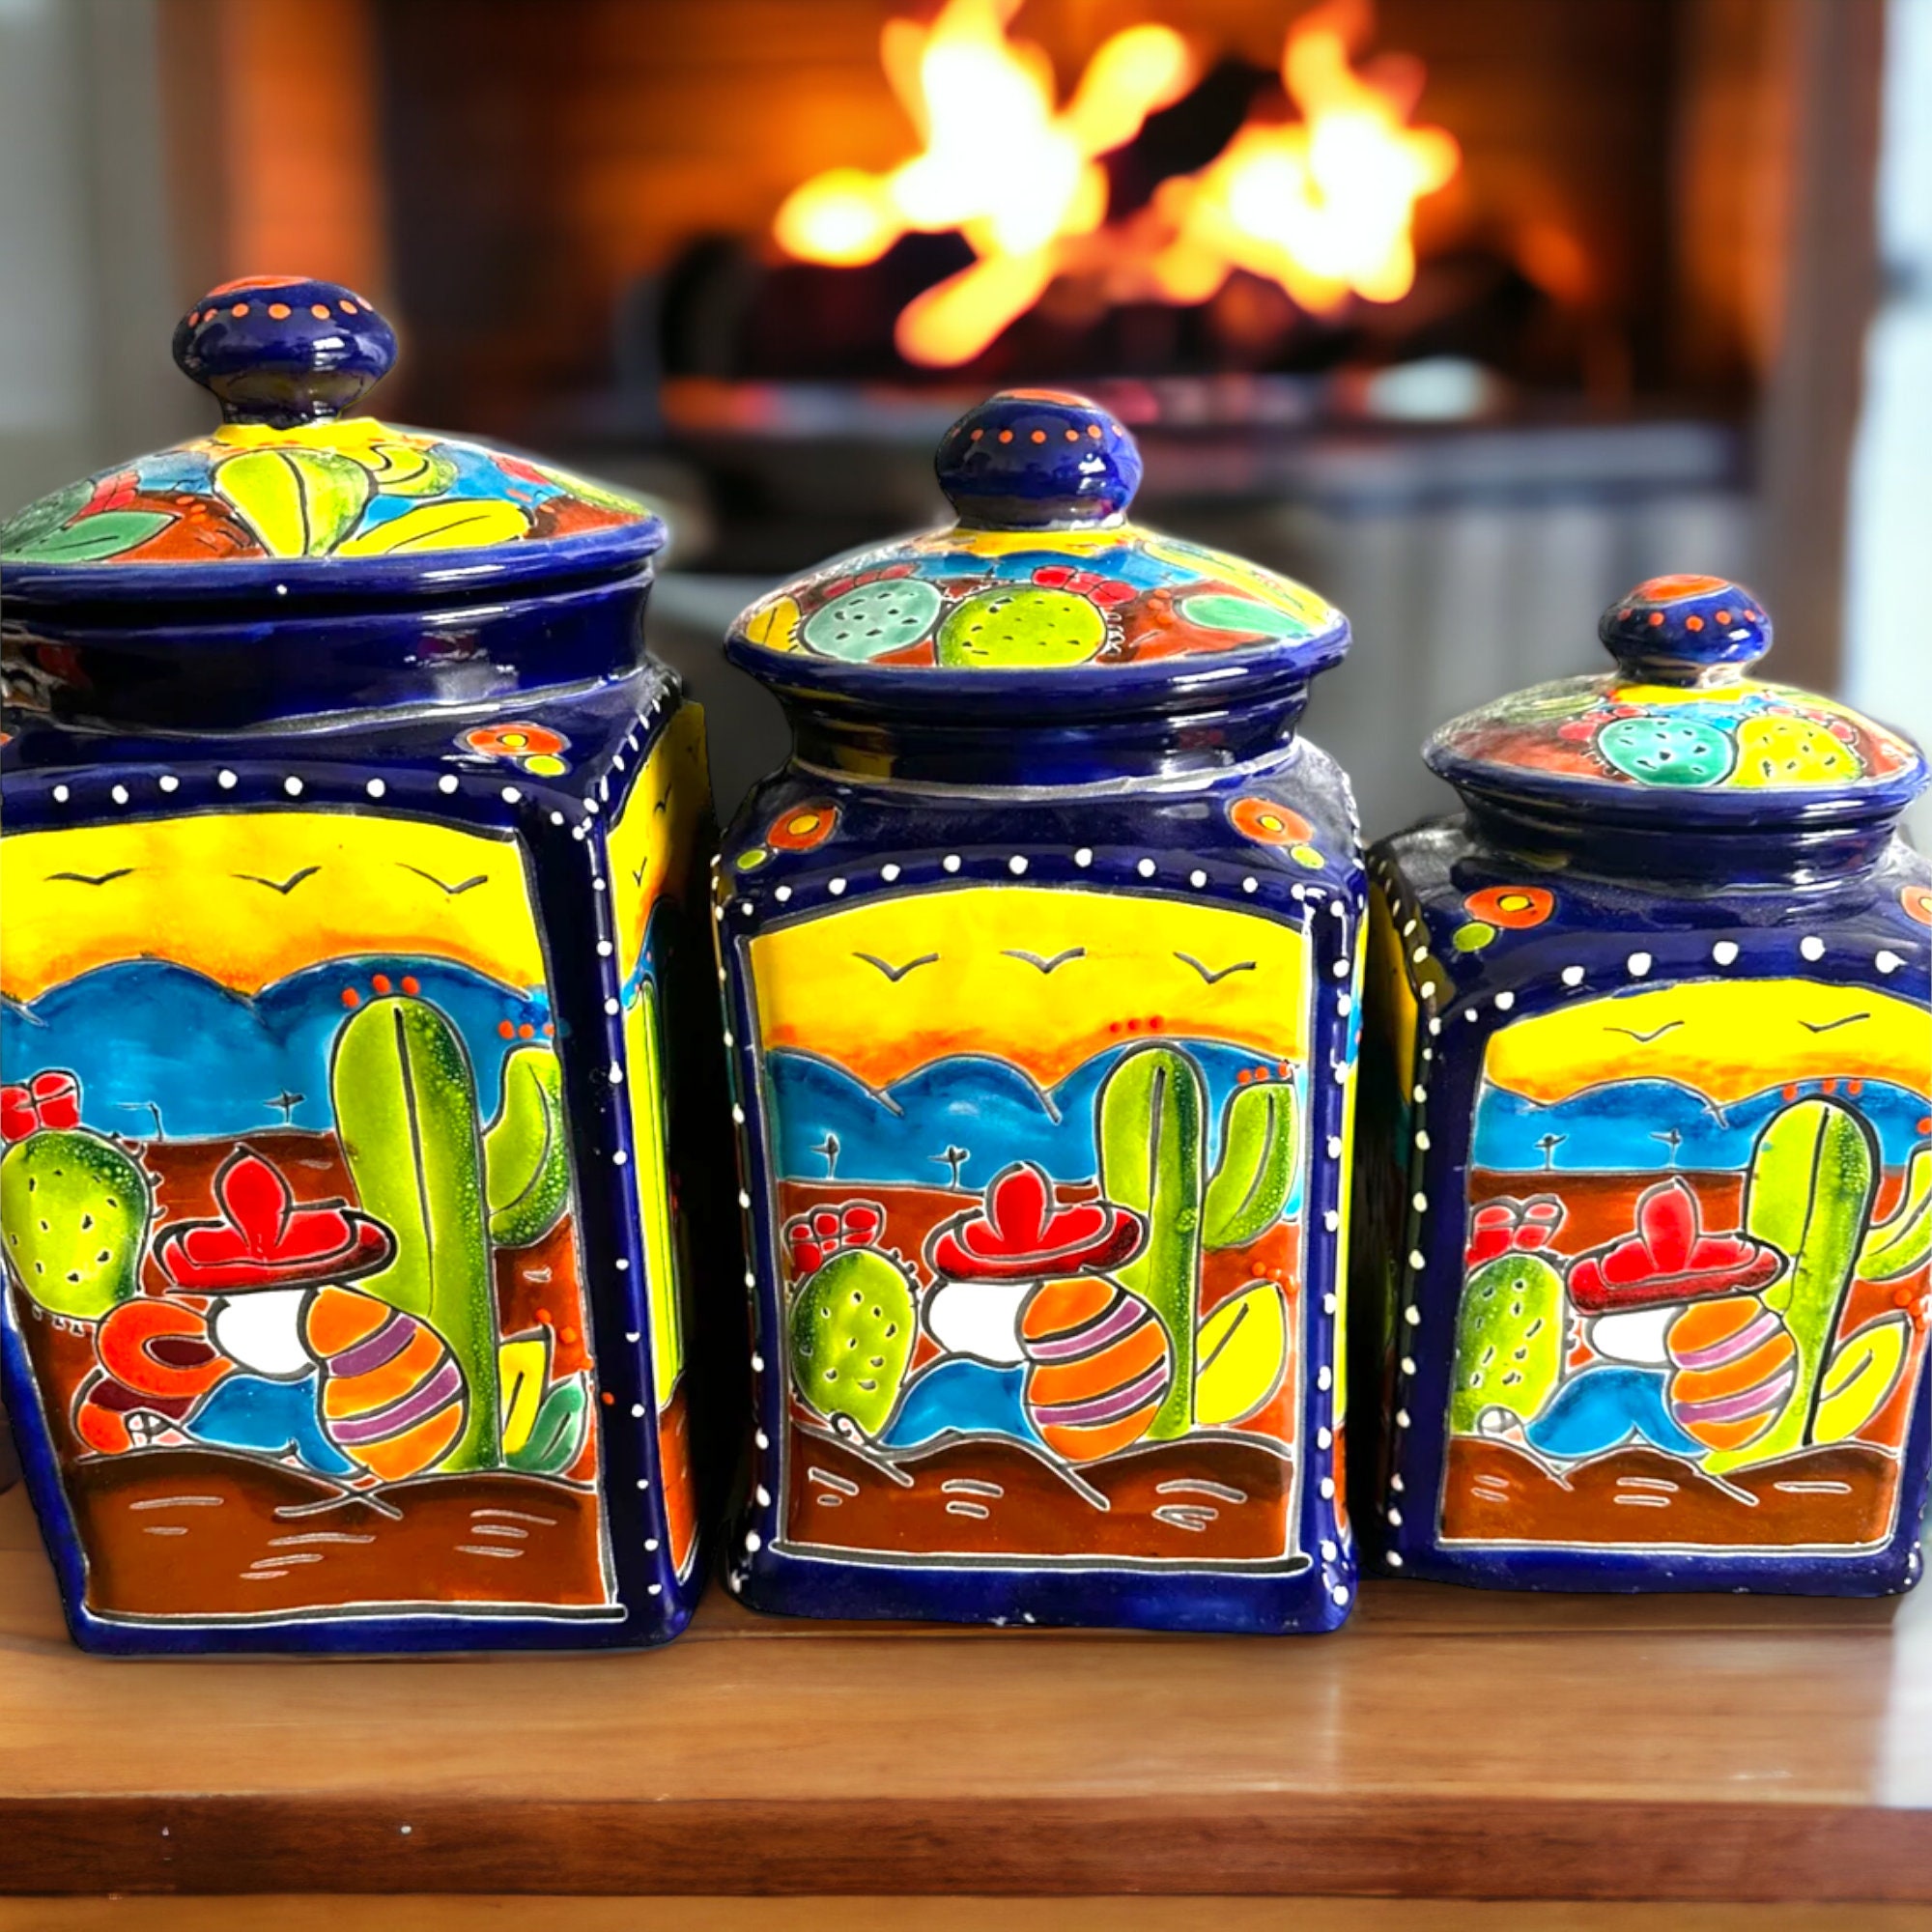 Unique Talavera Style Ceramic Ginger Jar - Cobalt Legacy